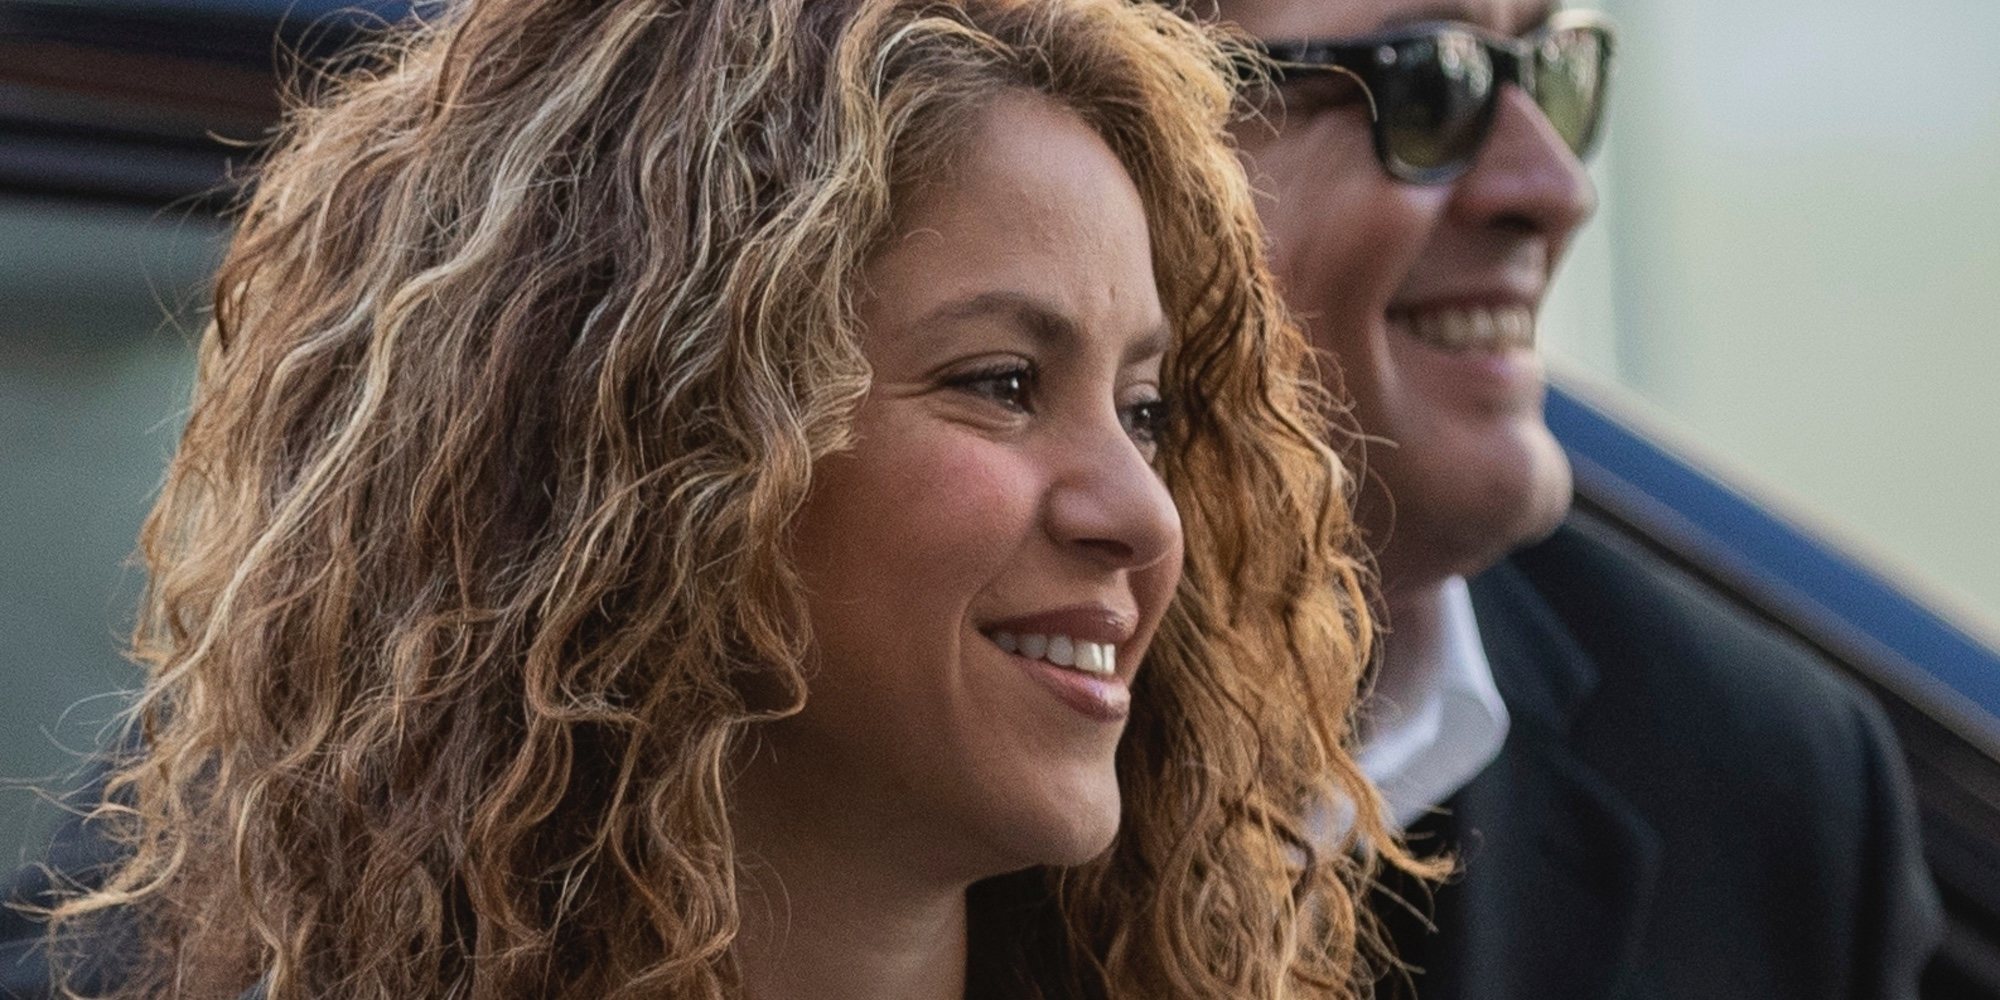 Desestimada la demanda de plagio contra Shakira y Carlos Vives por 'La bicicleta'